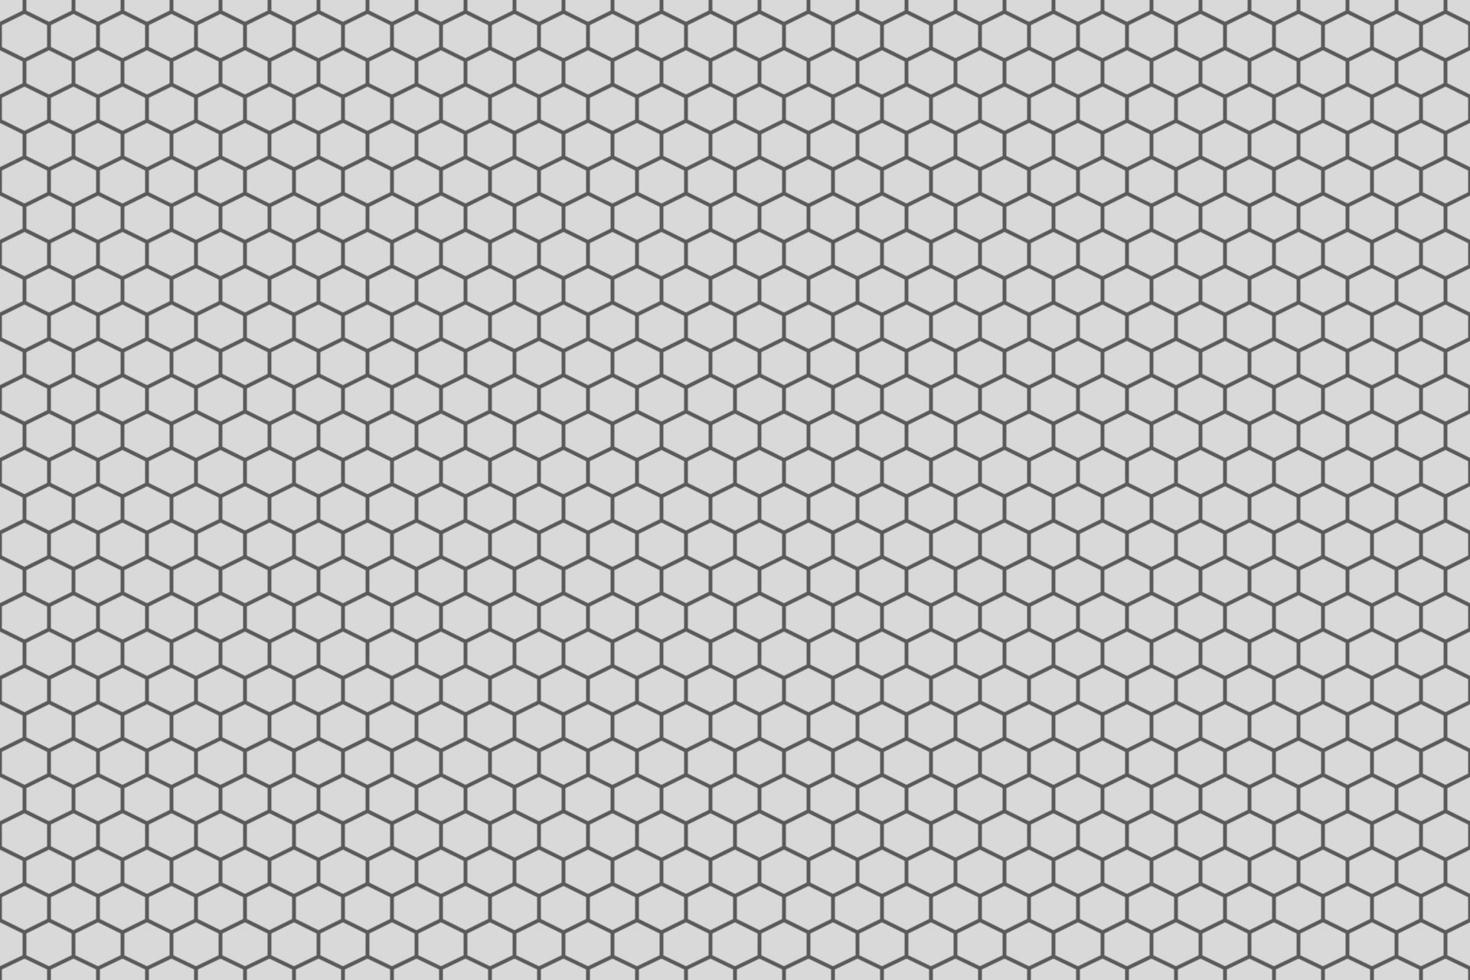 gemakkelijk meetkundig achtergrond met zeshoek cellen textuur. vector naadloos patroon.